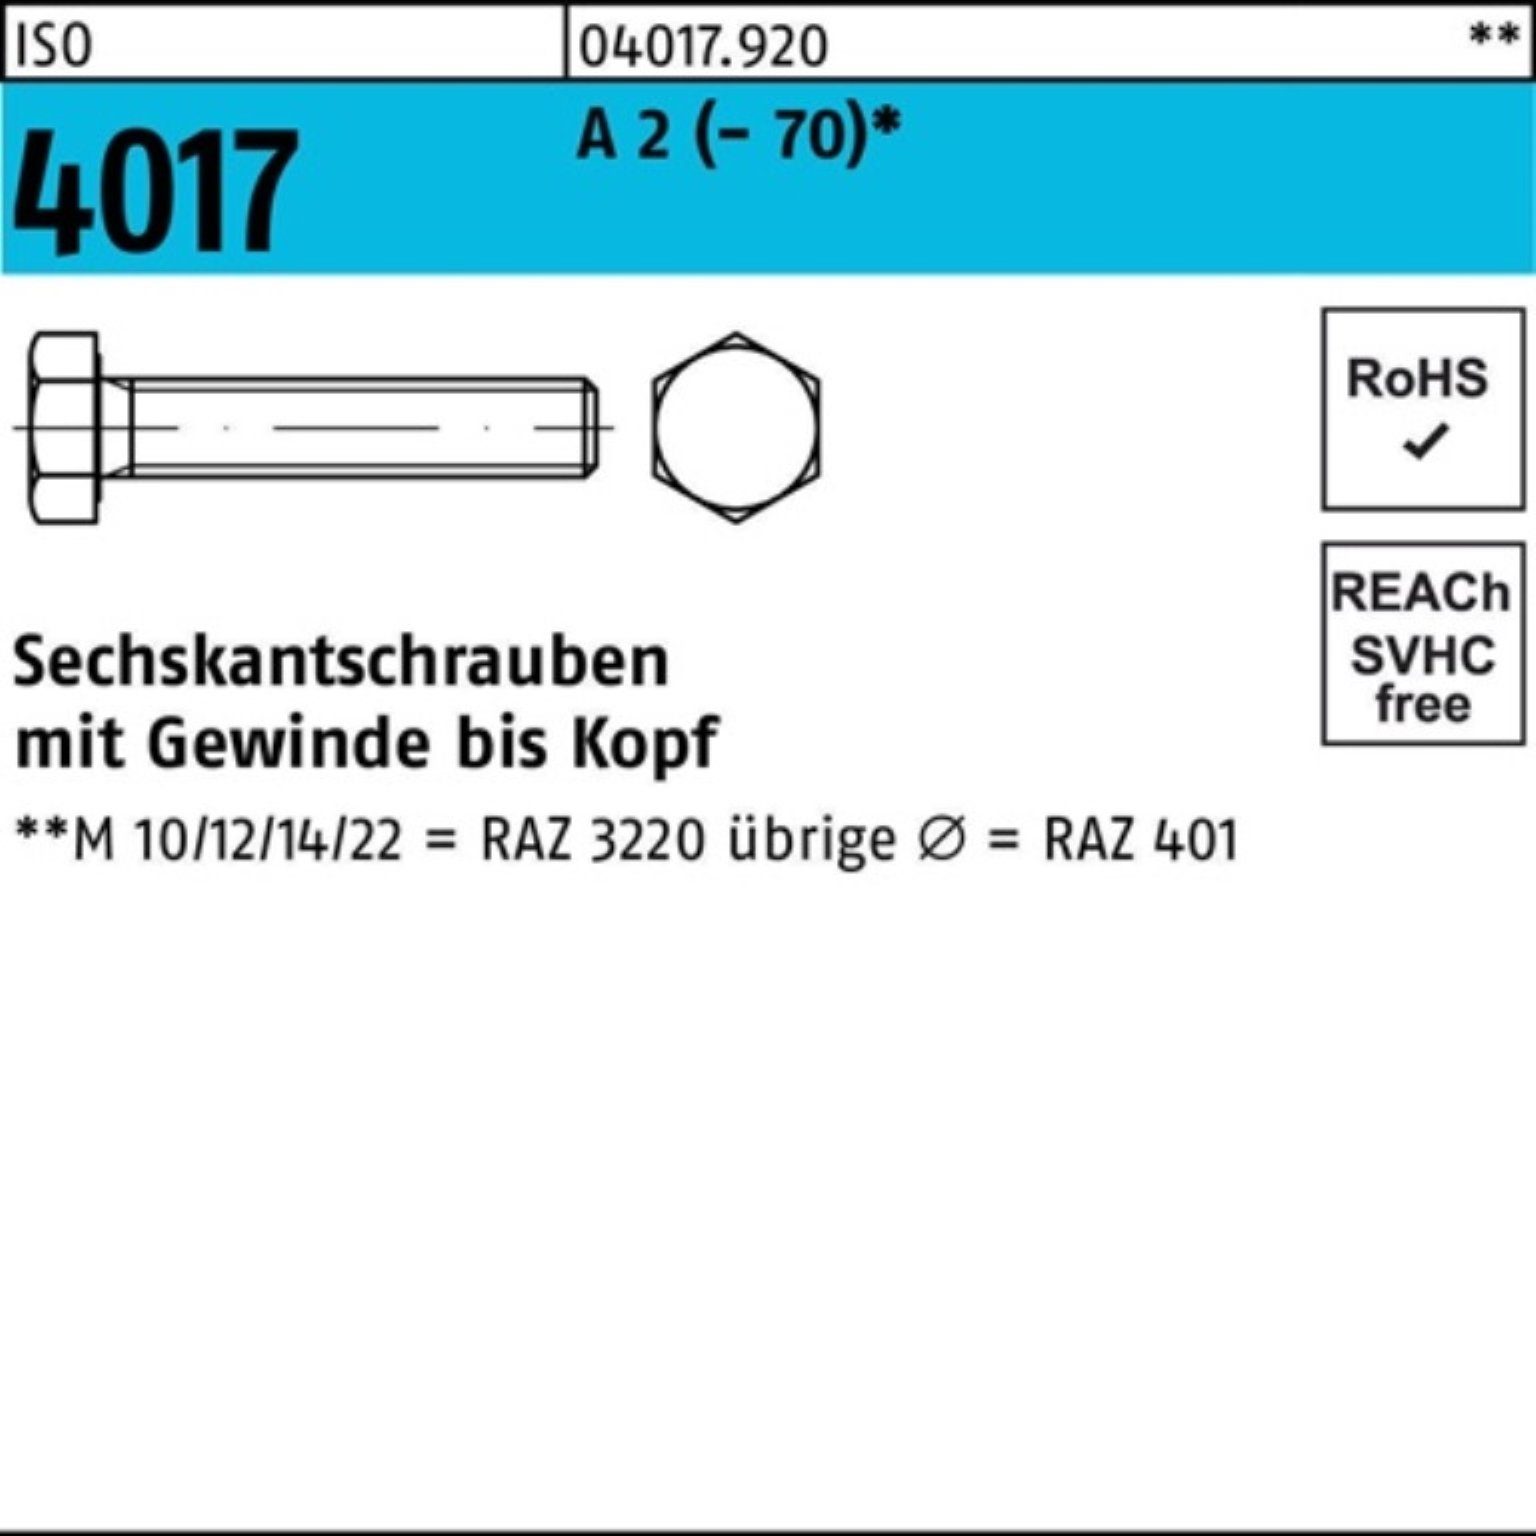 Bufab Sechskantschraube 100er Pack Sechskantschraube ISO 4017 VG M5x 8 A 2 (70) 100 Stück I